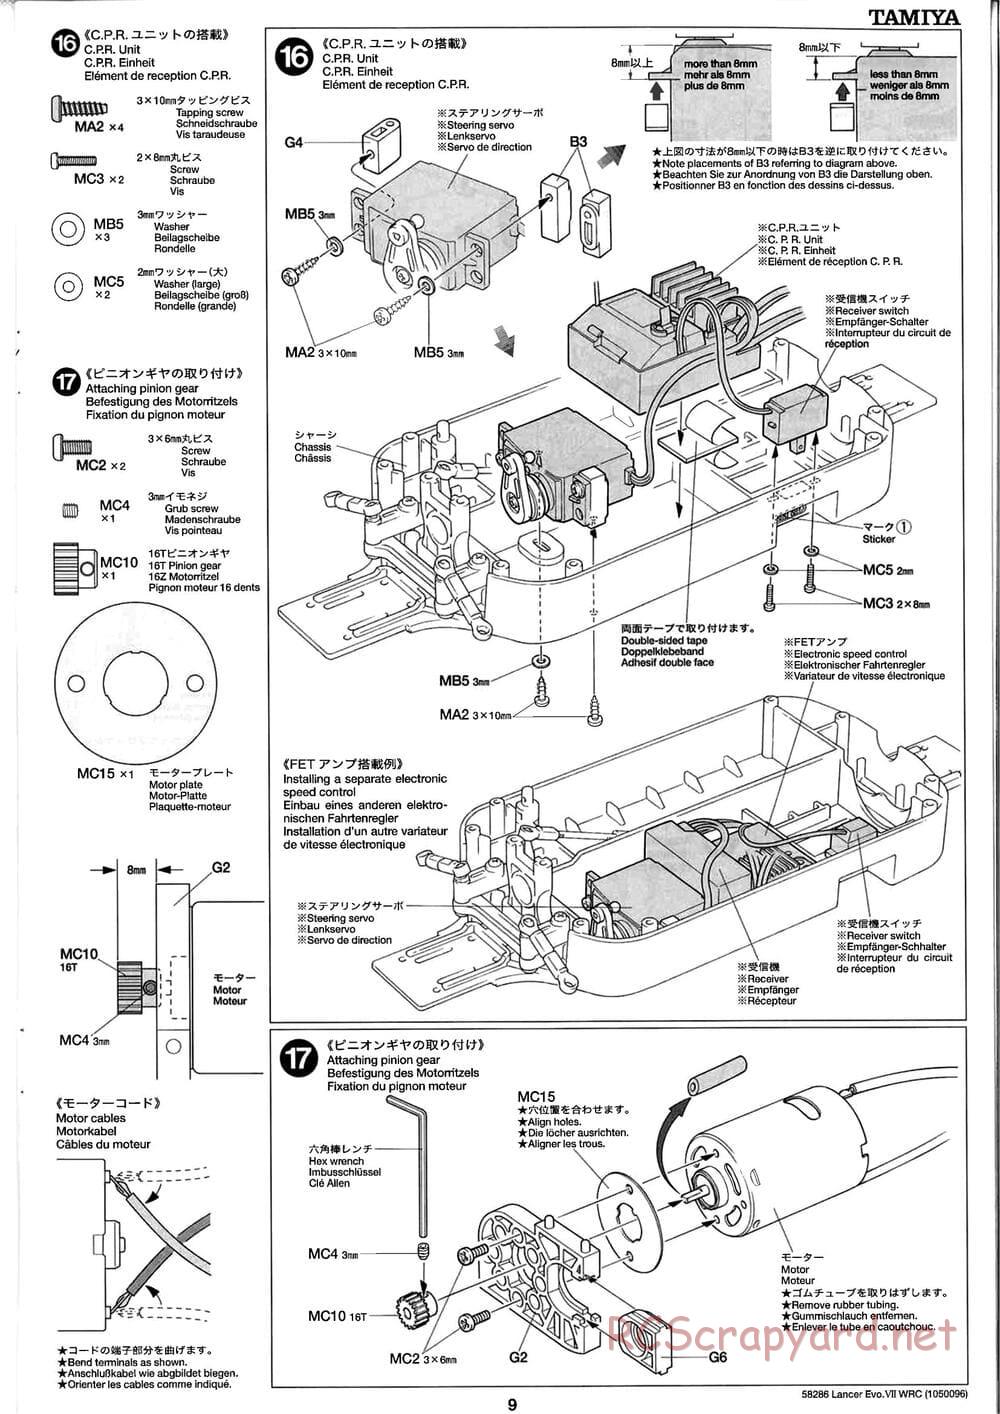 Tamiya - Mitsubishi Lancer Evolution VII WRC - TB-01 Chassis - Manual - Page 9